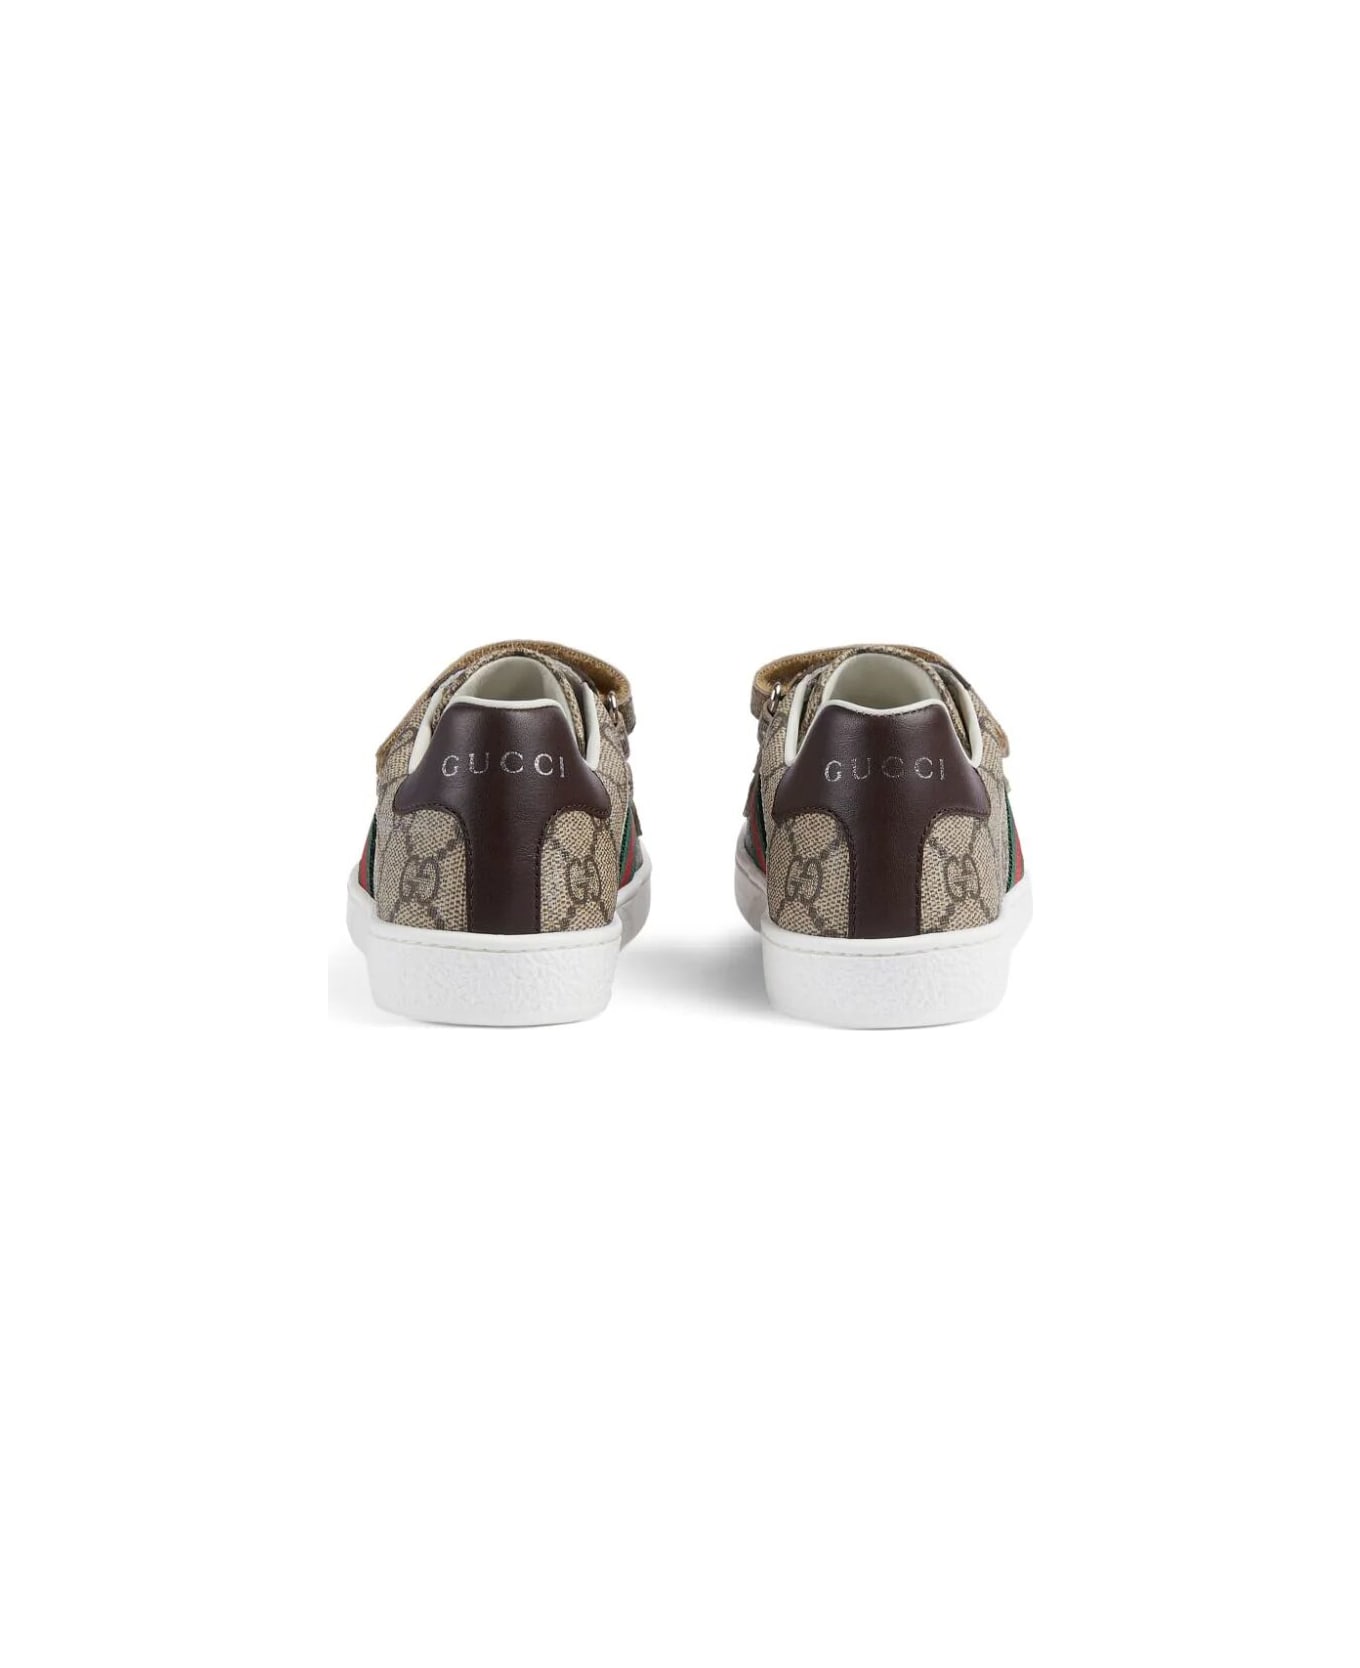 Gucci Sneaker Plastic - Beige Ebony Cocoa